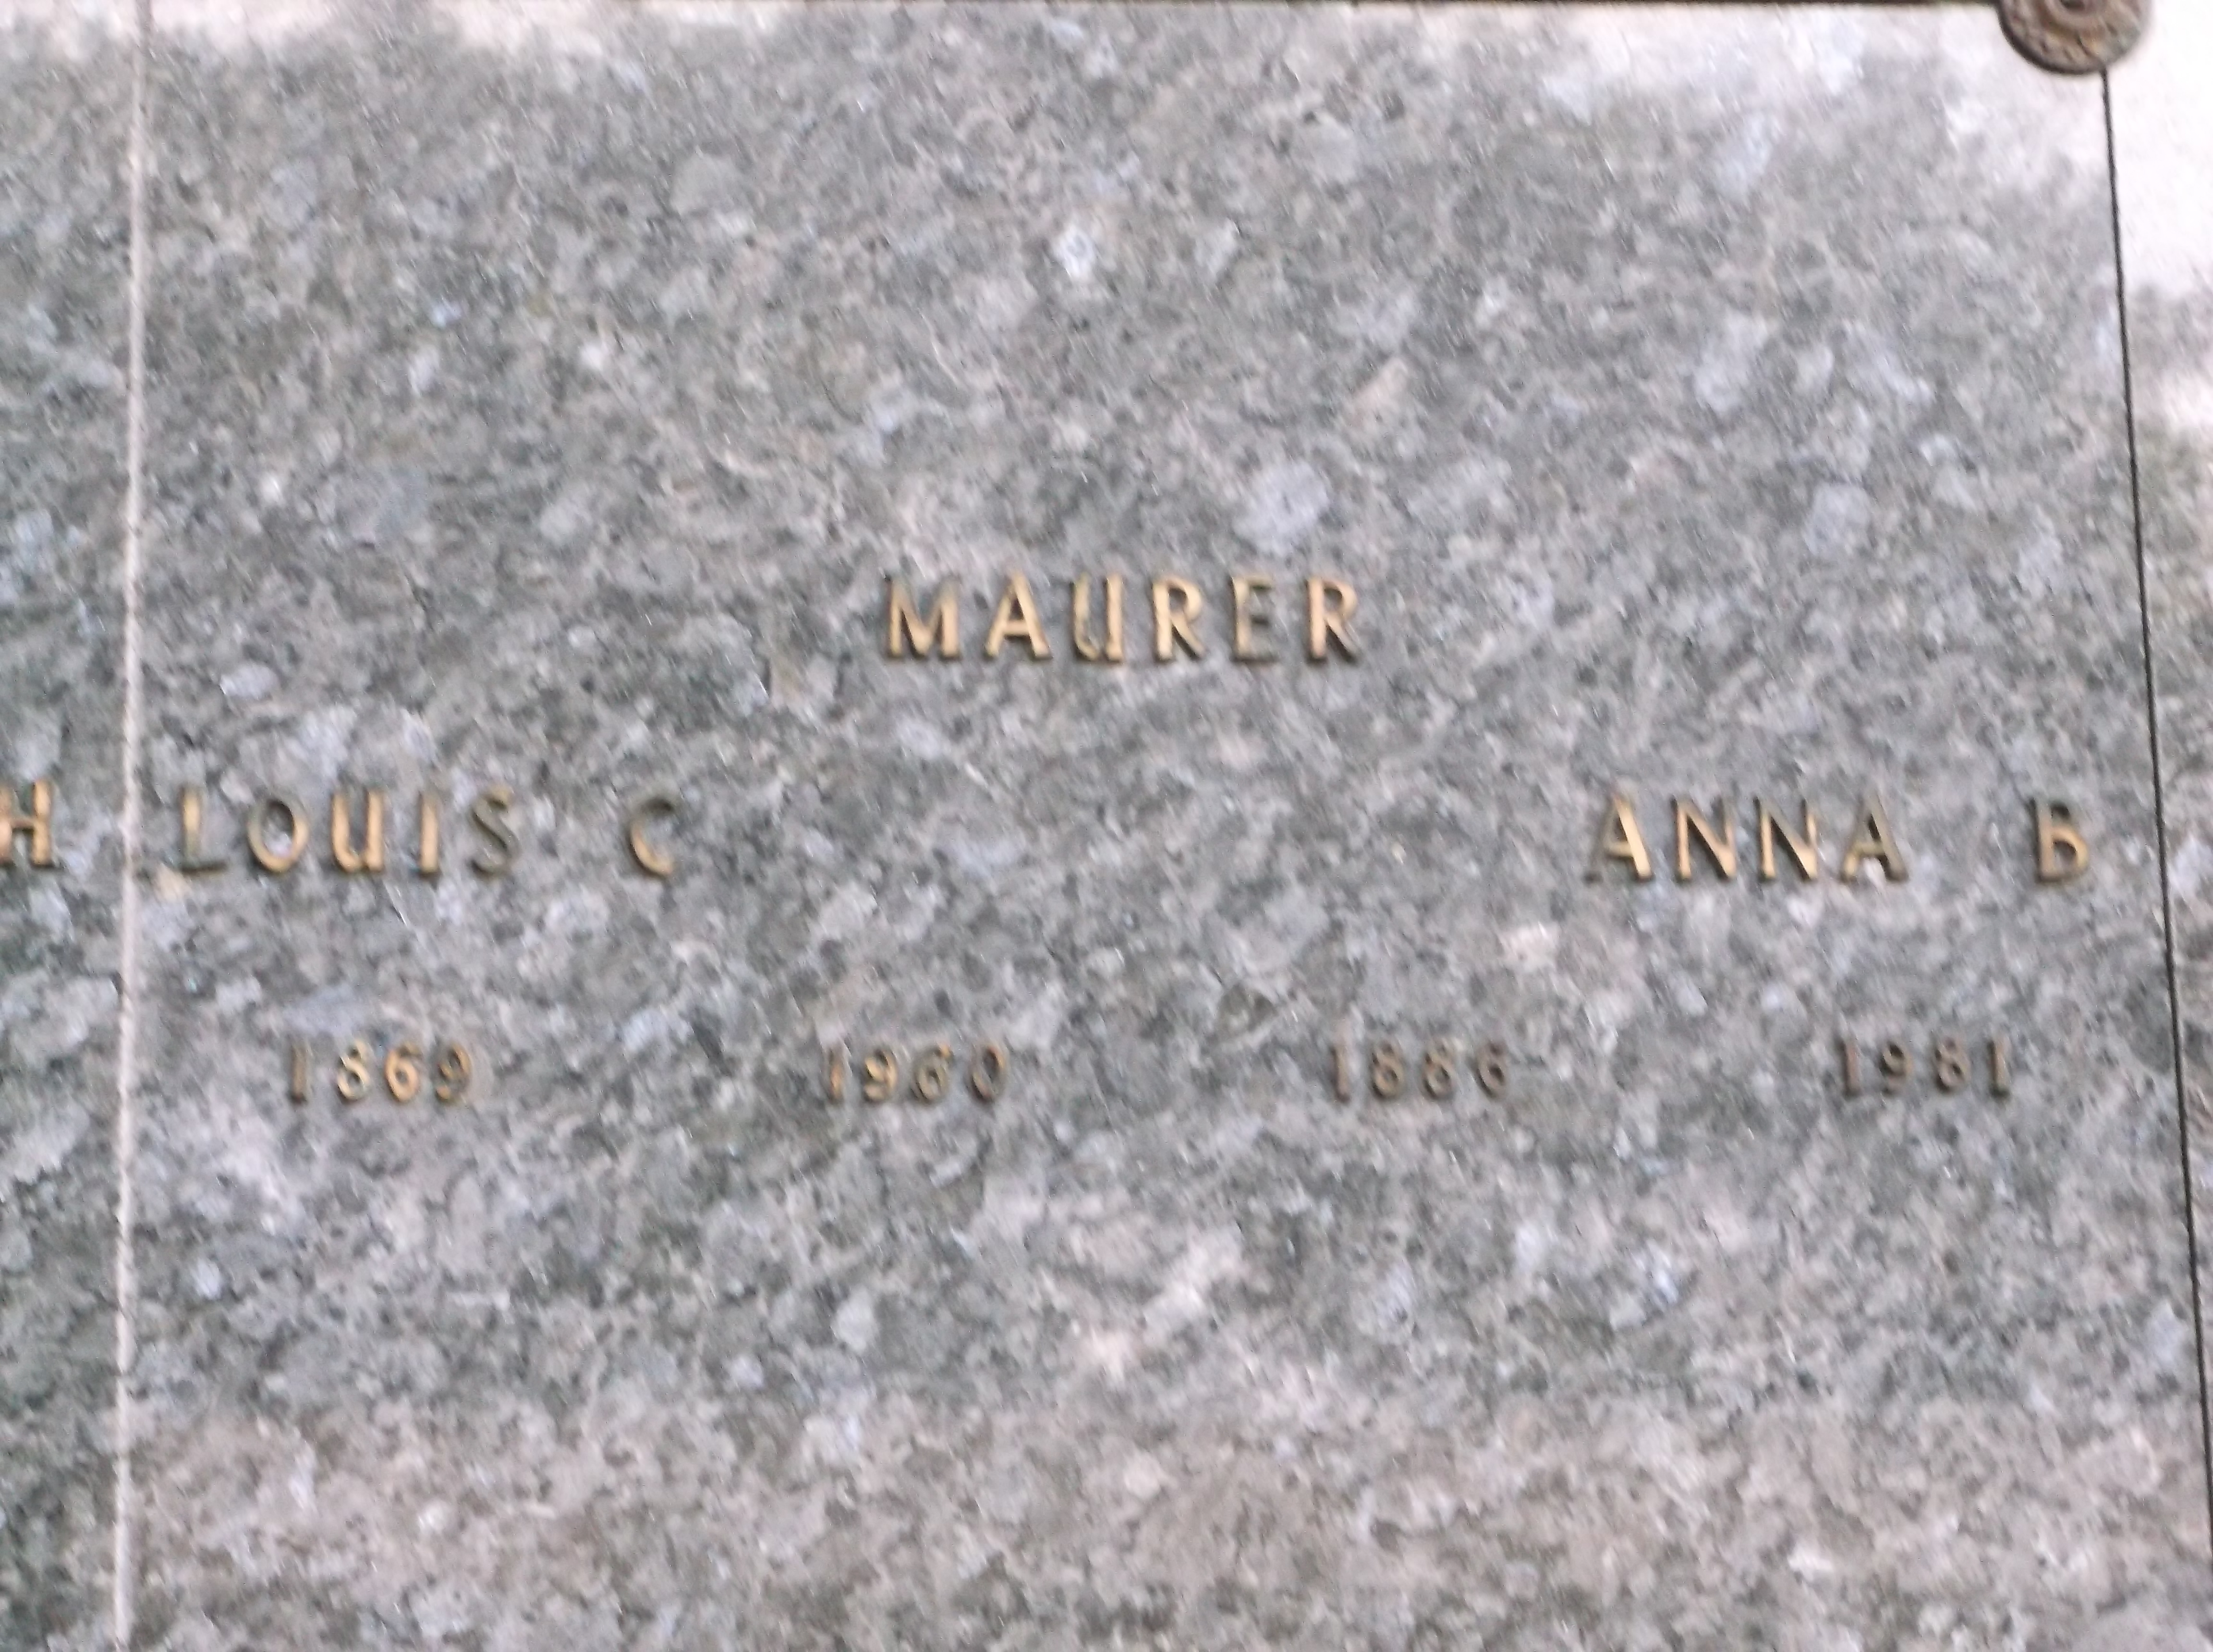 Louis C Maurer